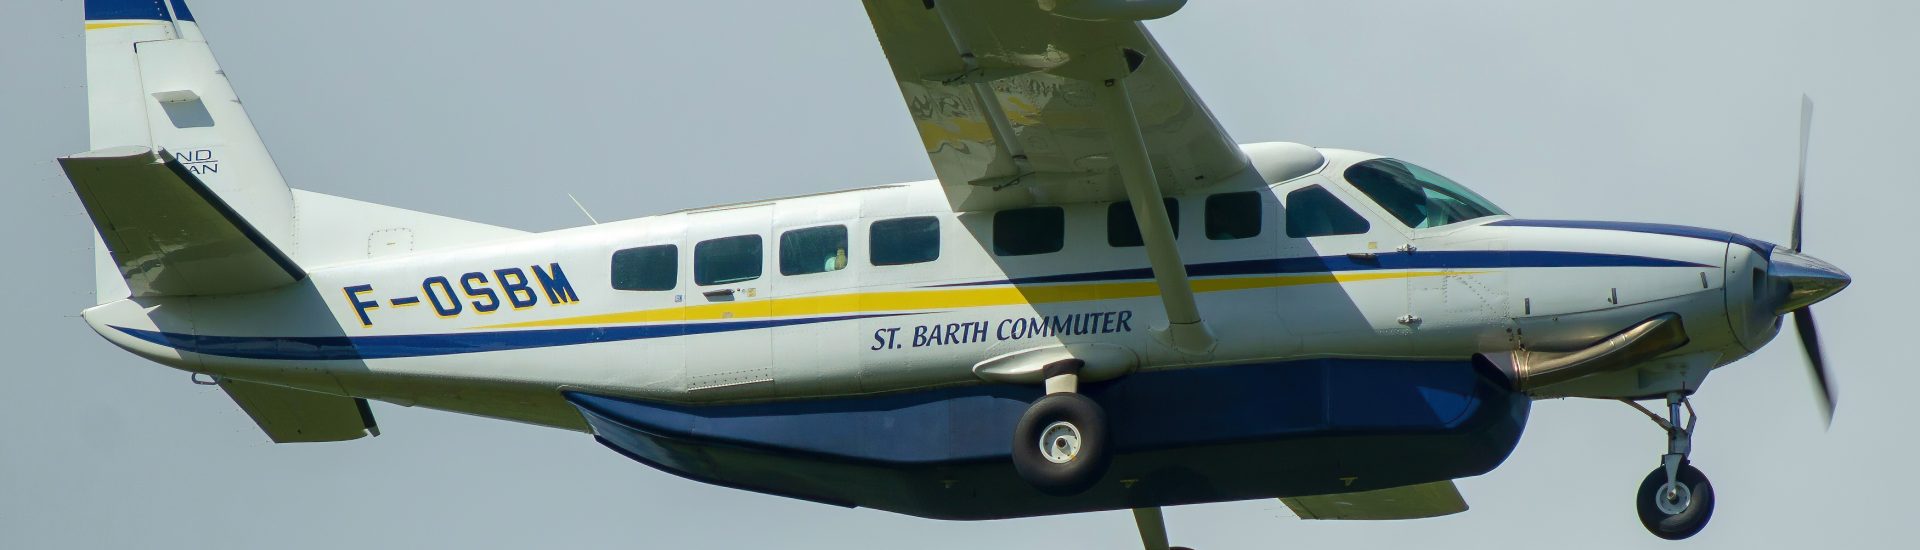 Cessna 208B St. Barth Commuter F-OSBM